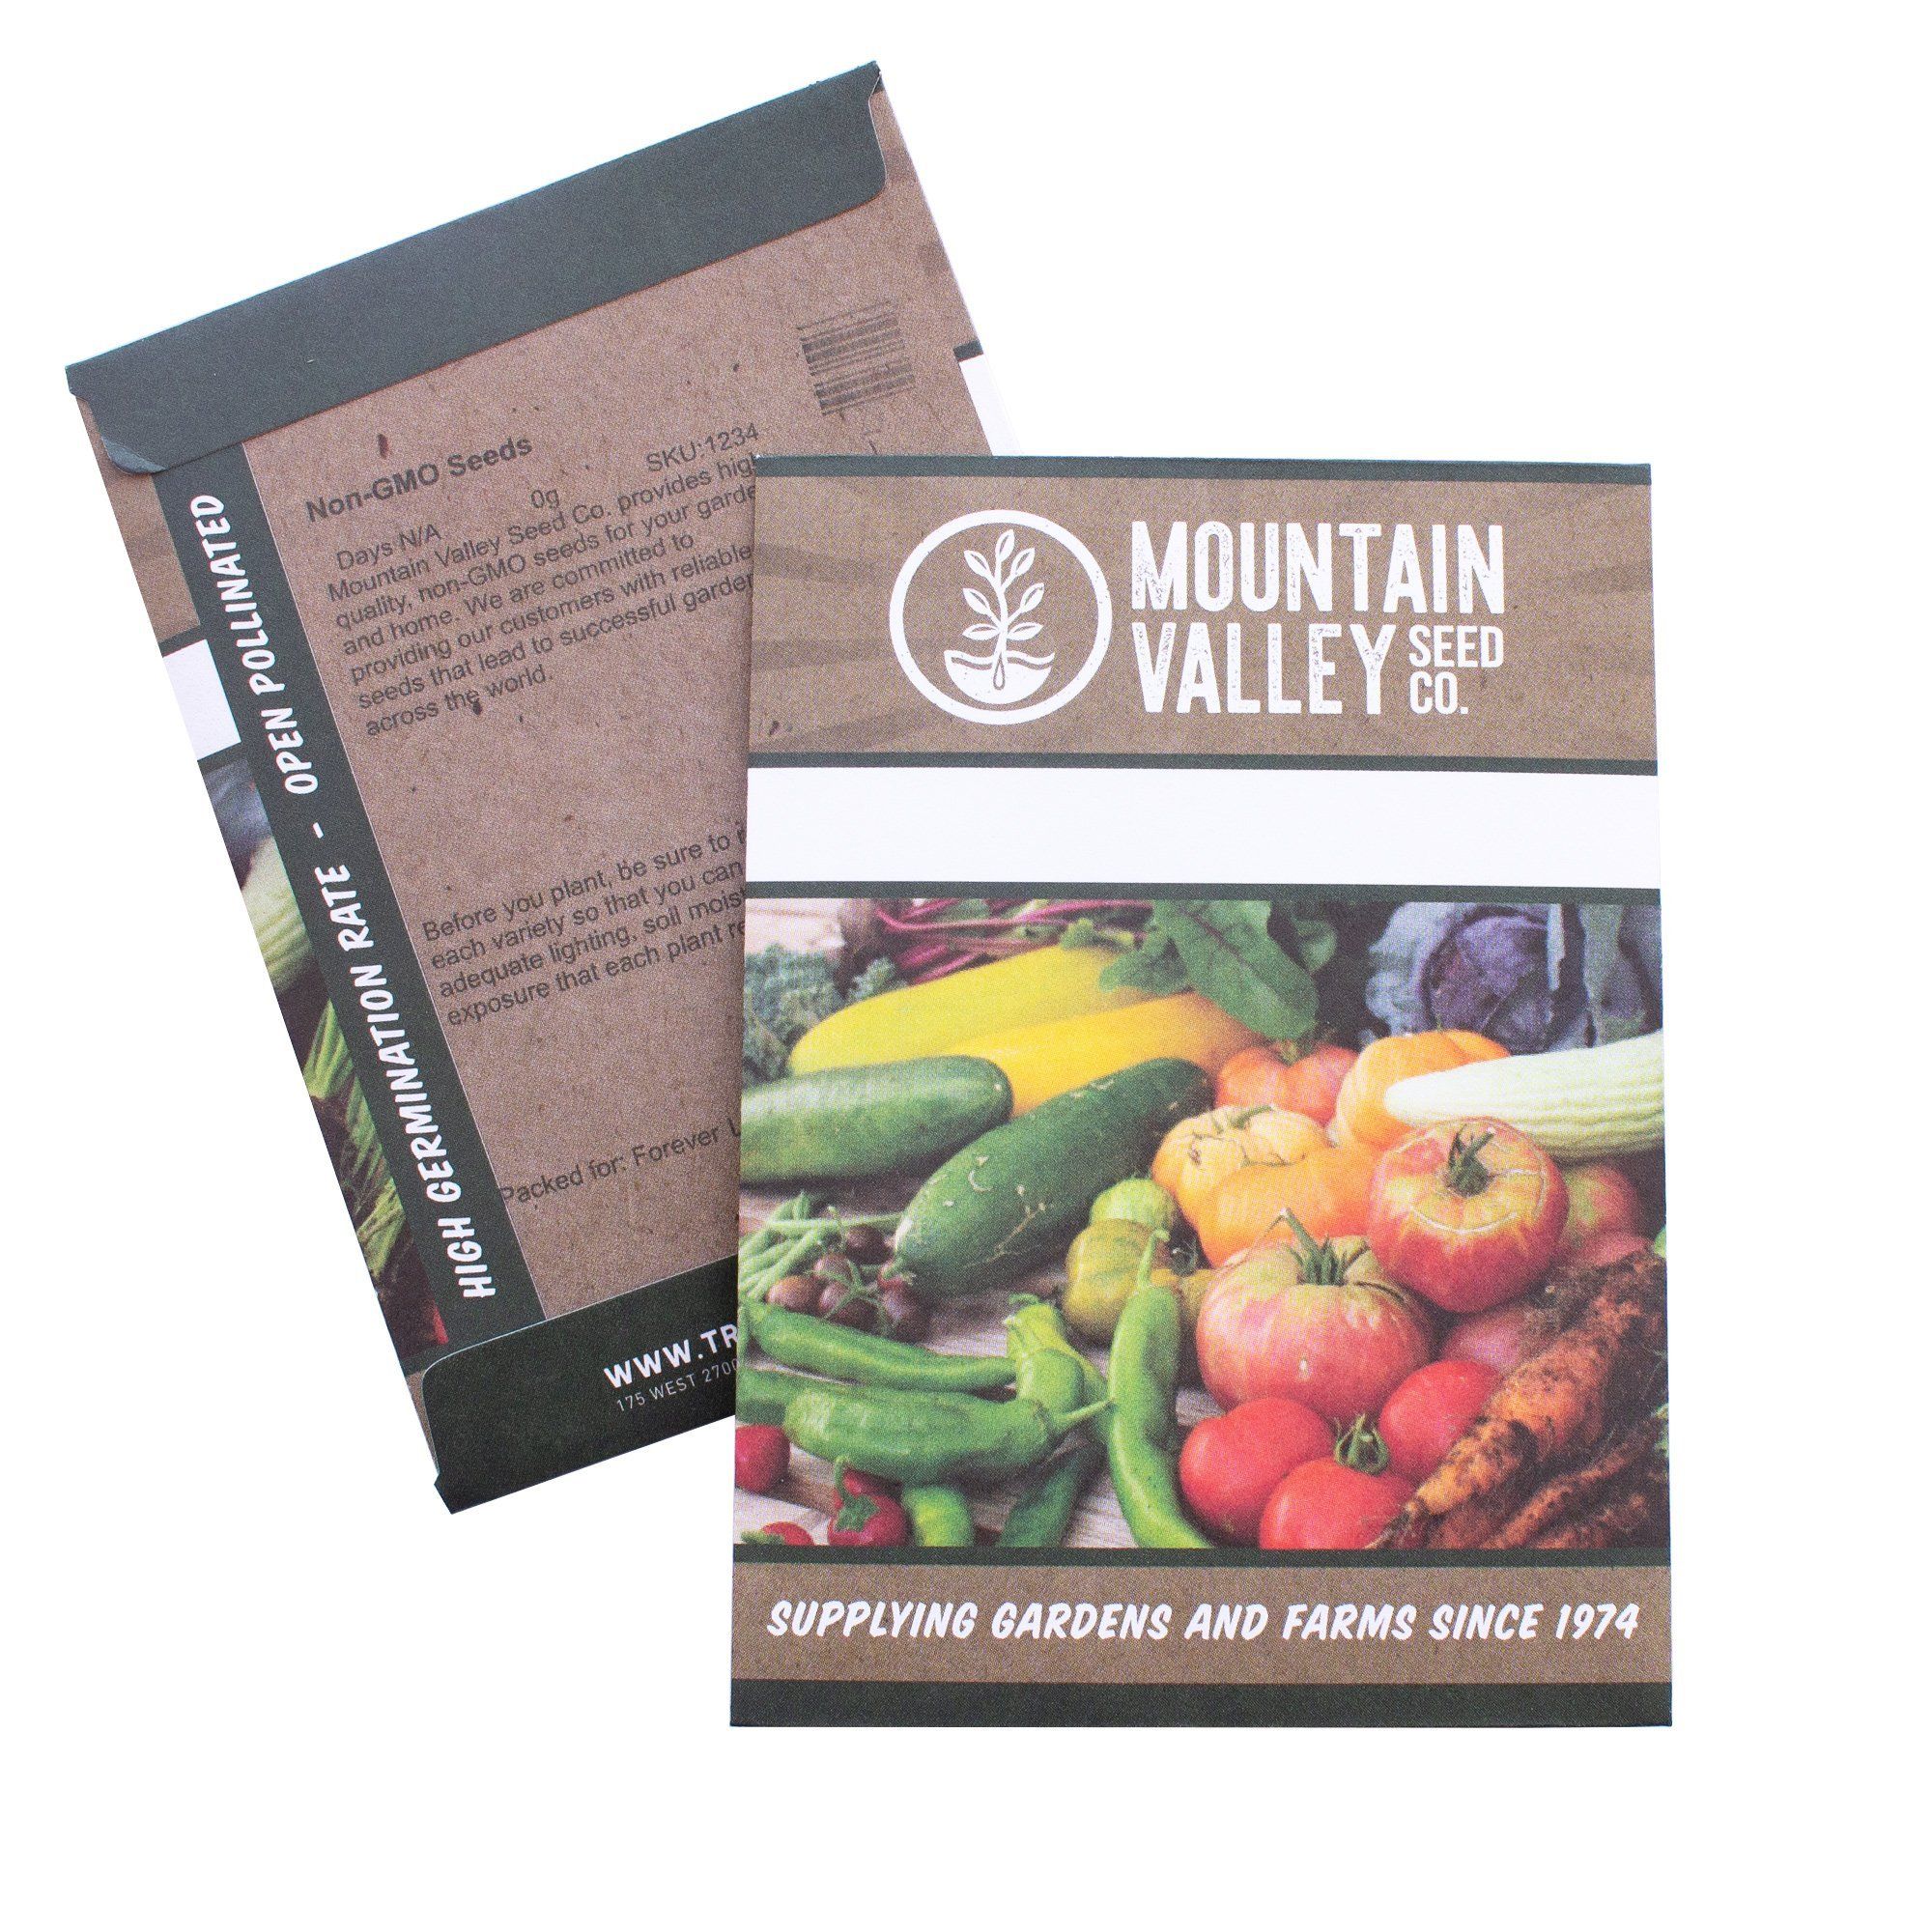 Buy Alvarado Community Farm Beefsteak Tomato Seeds - Slicing Variety @ $2.95